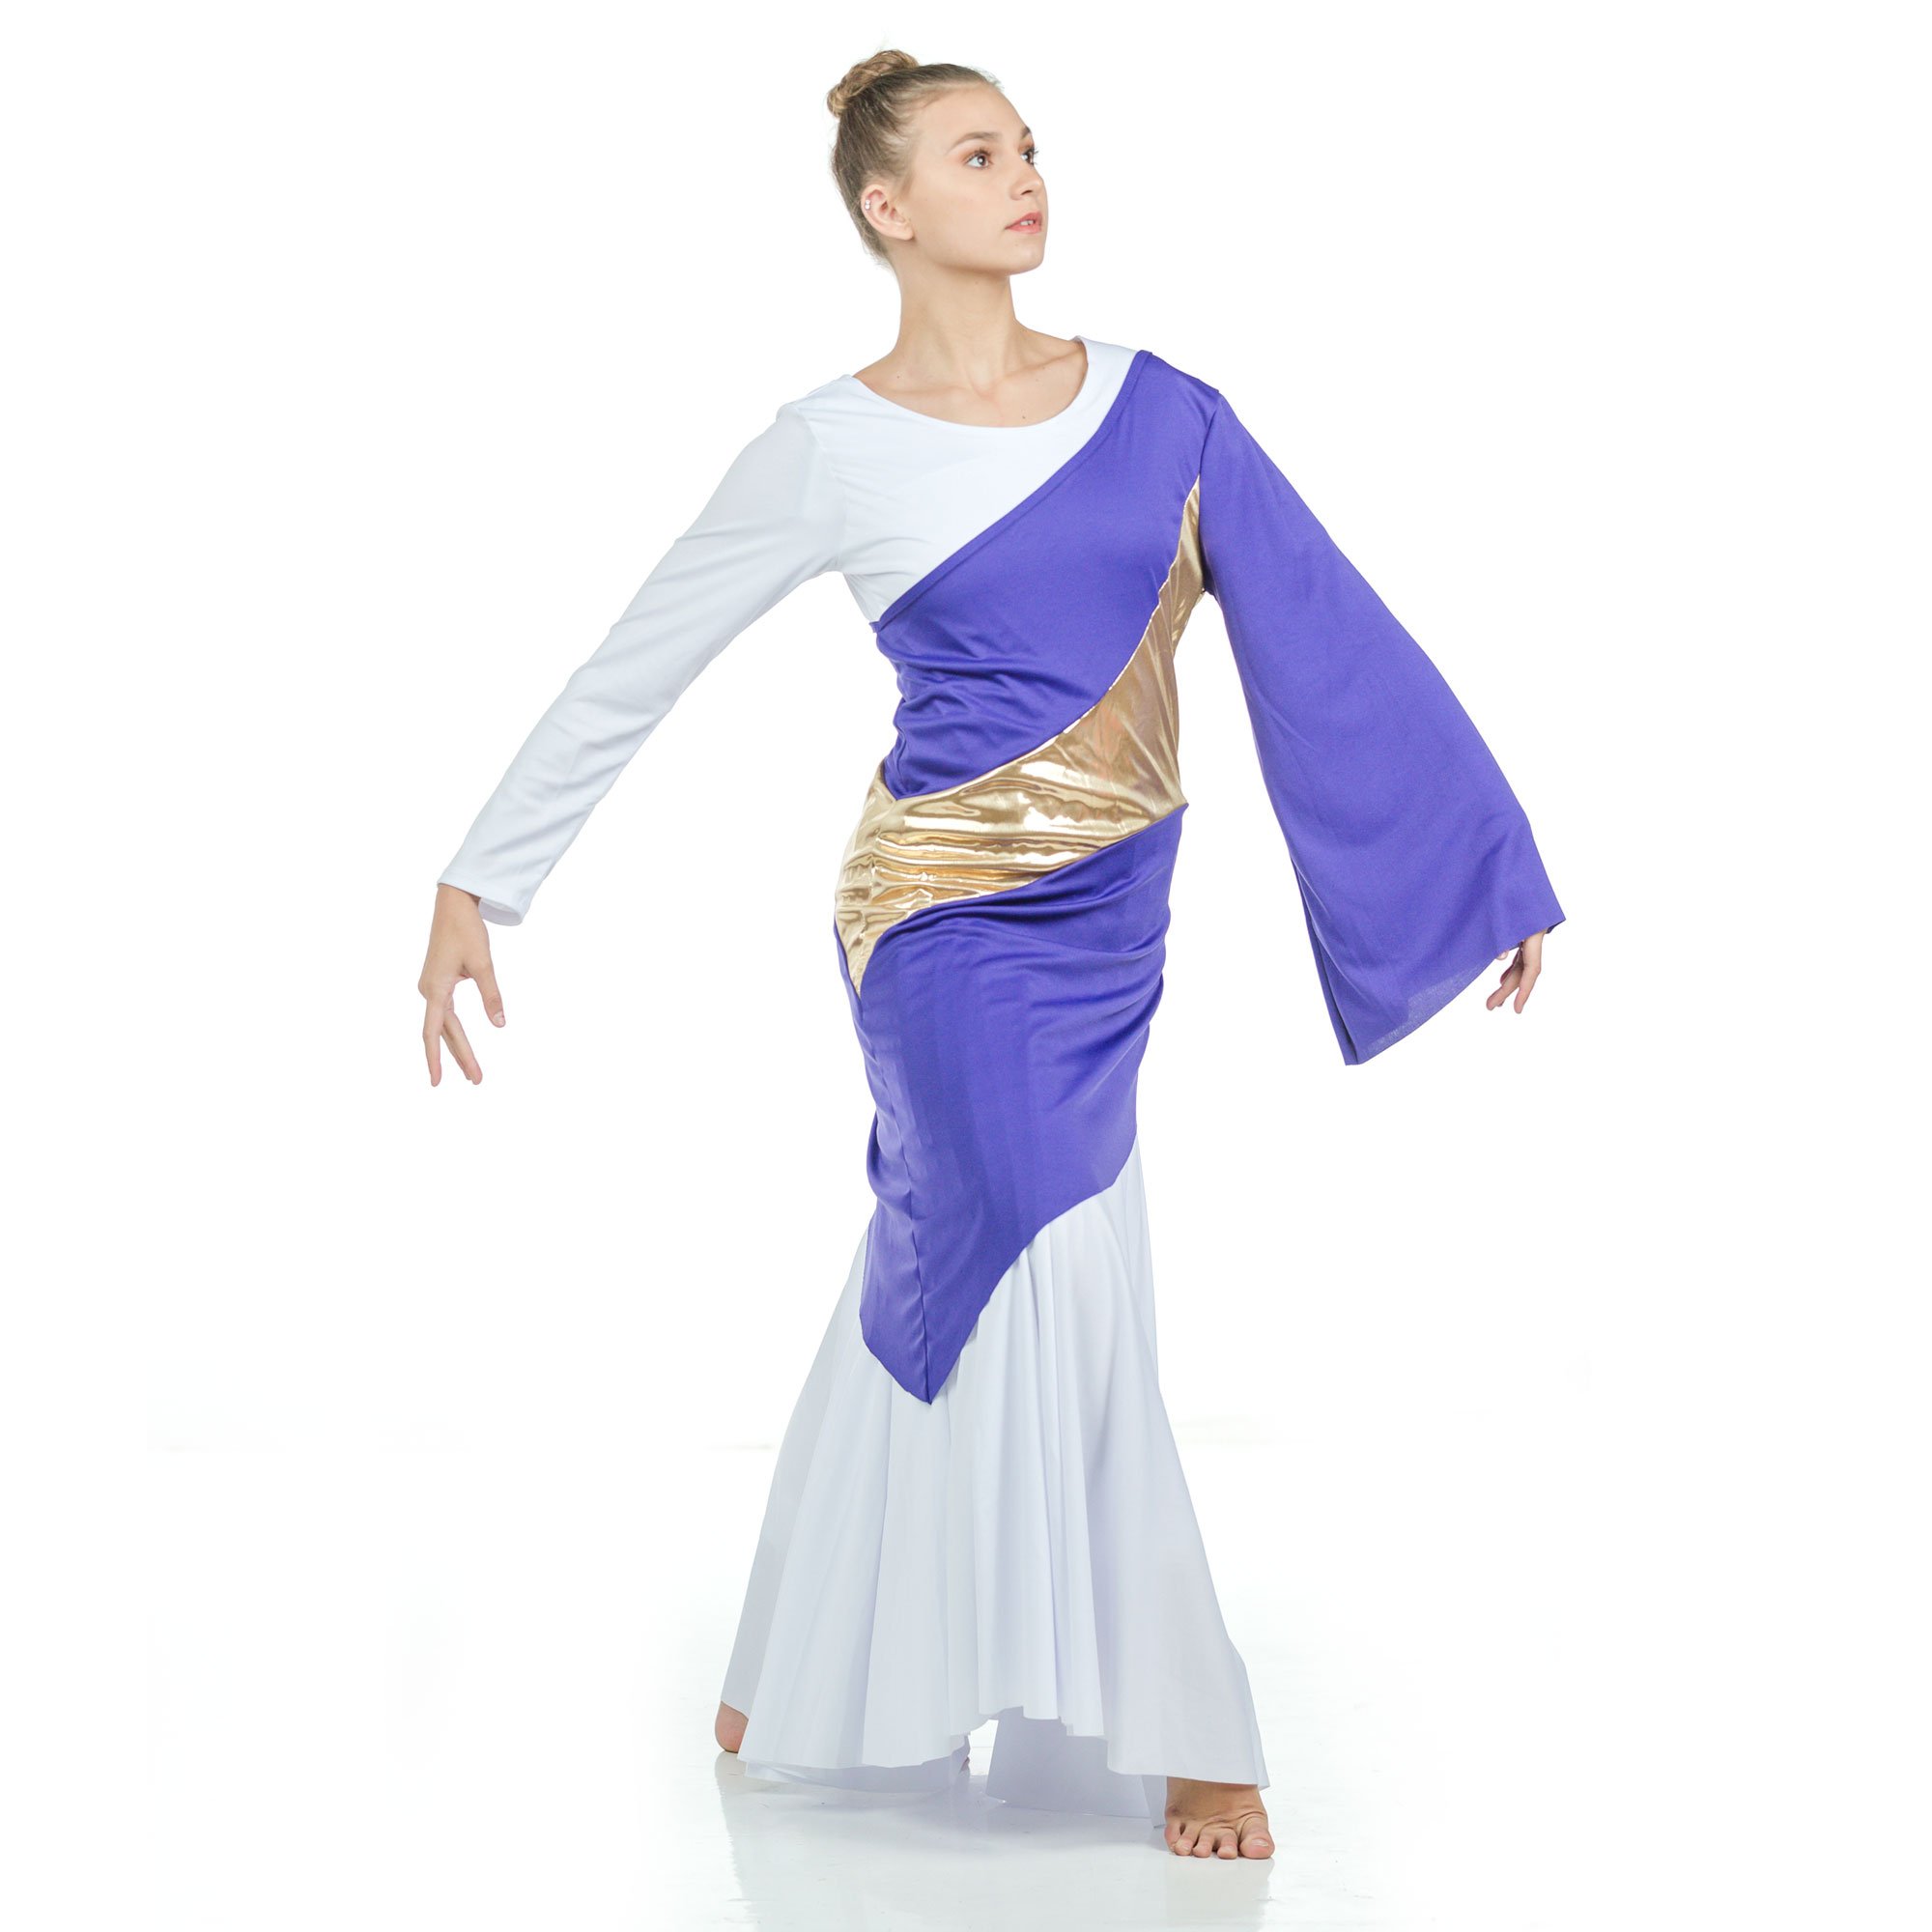 Danzcue Asymmetrical Praise Dance Pullover - Click Image to Close